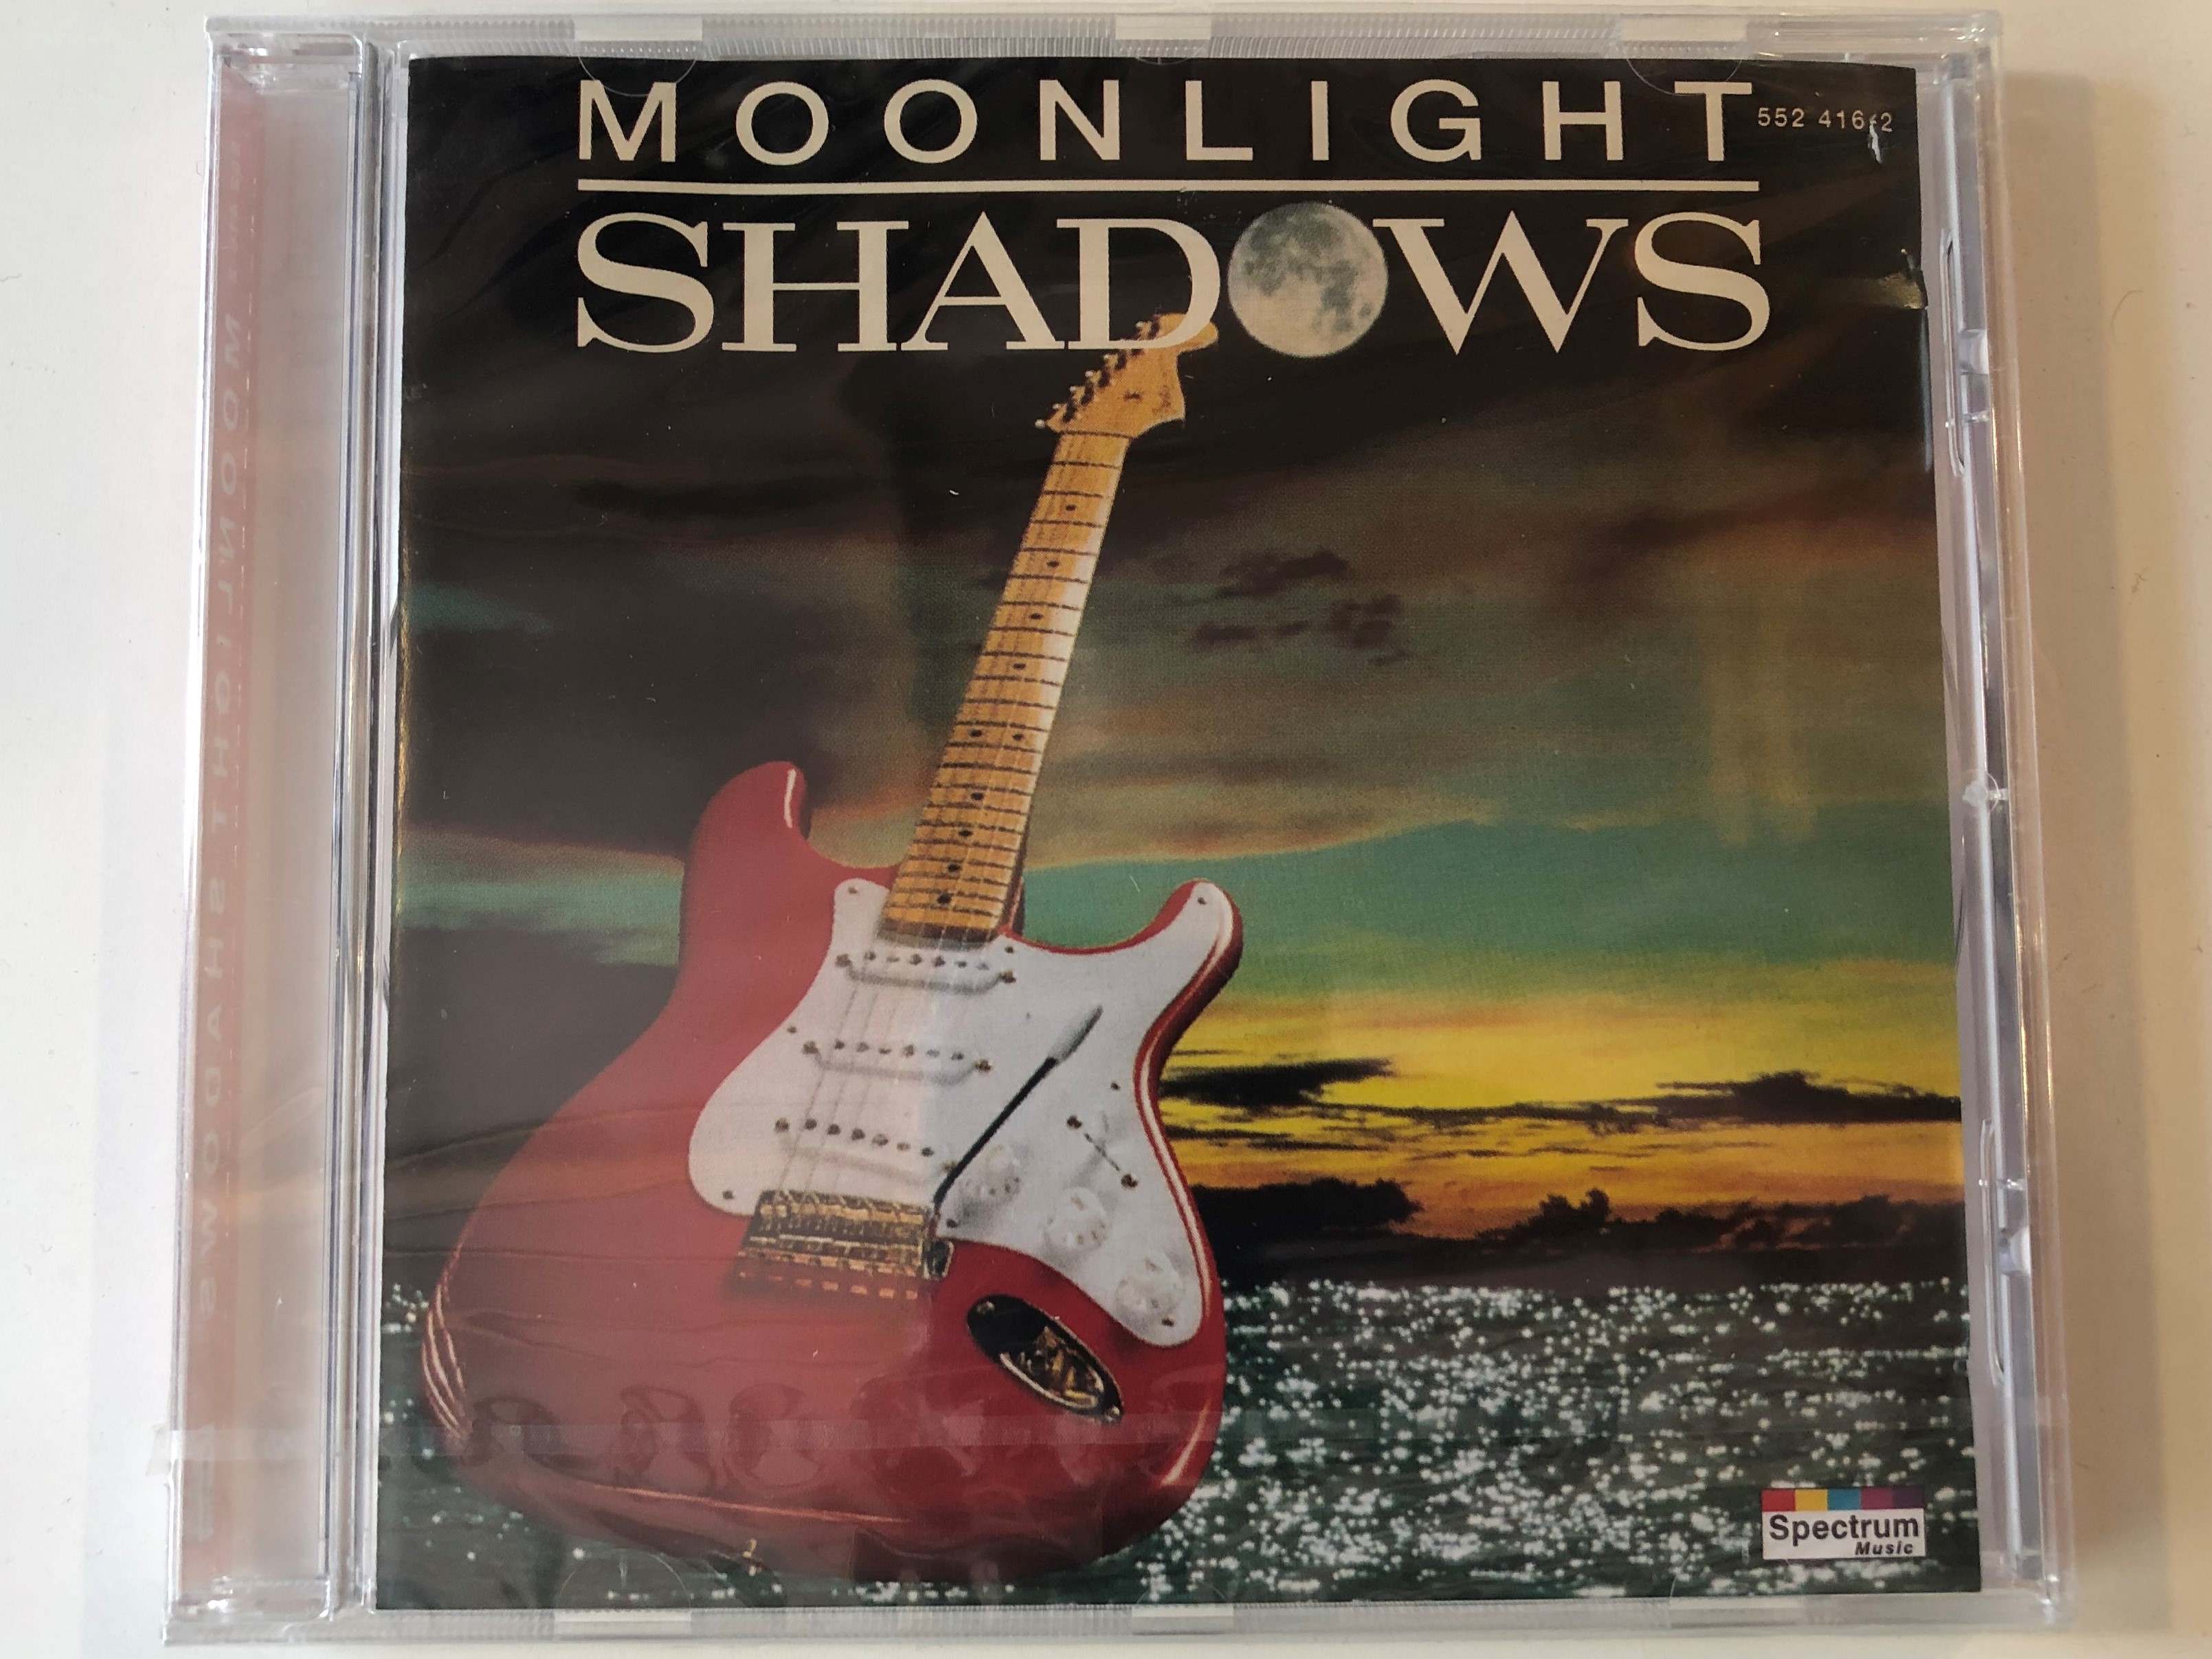 moonlight-shadows-polygram-audio-cd-1986-552-416-2-1-.jpg